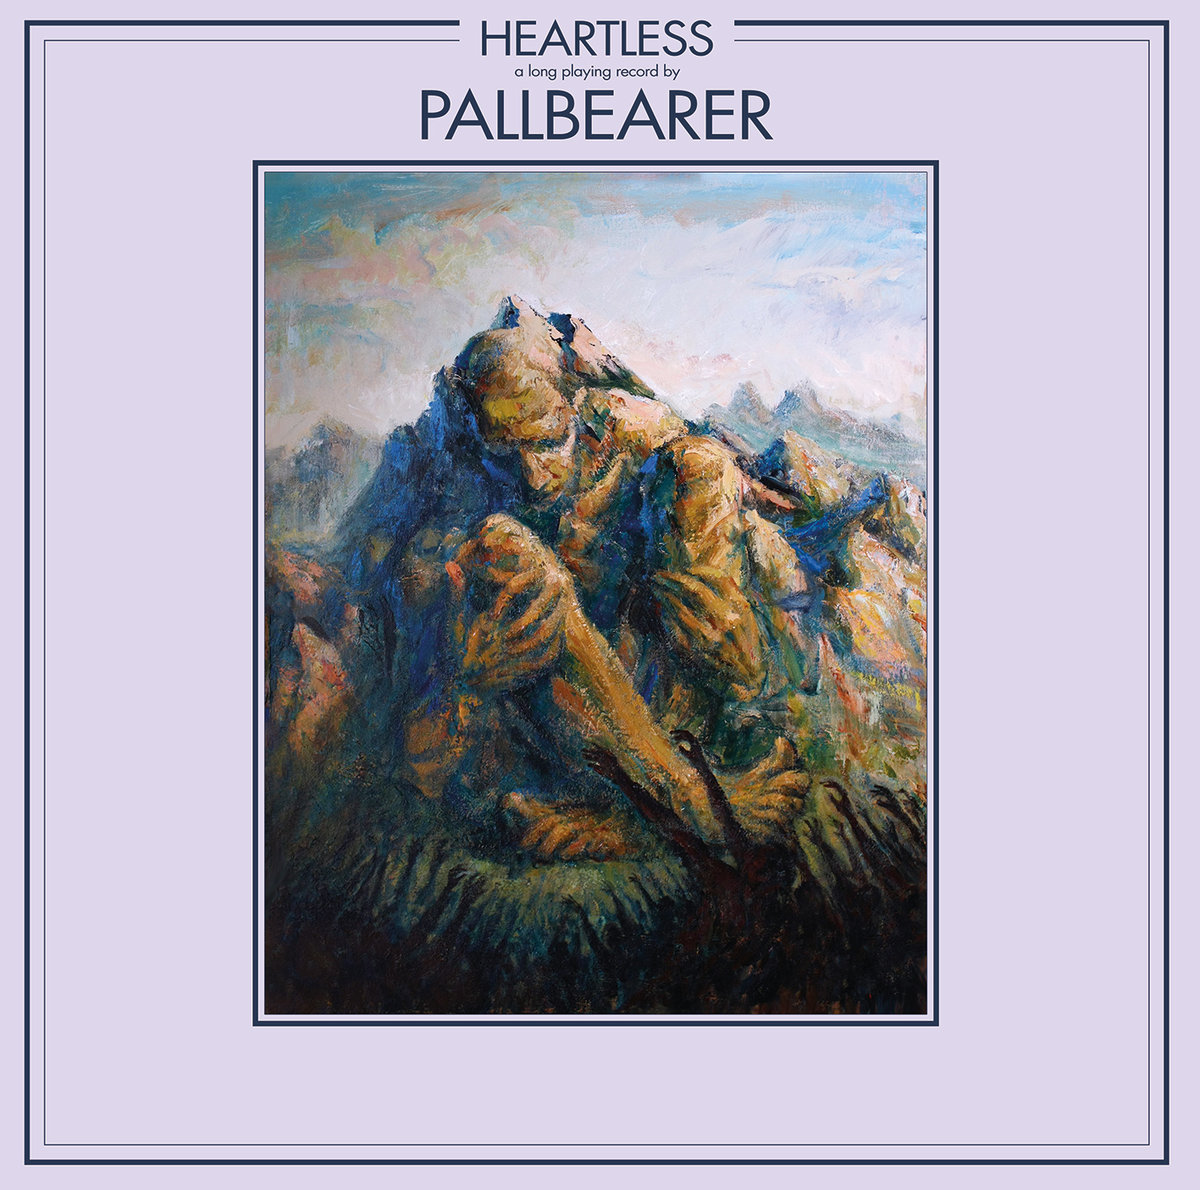 New Music: Stream Pallbearer's <i>Heartless</i>